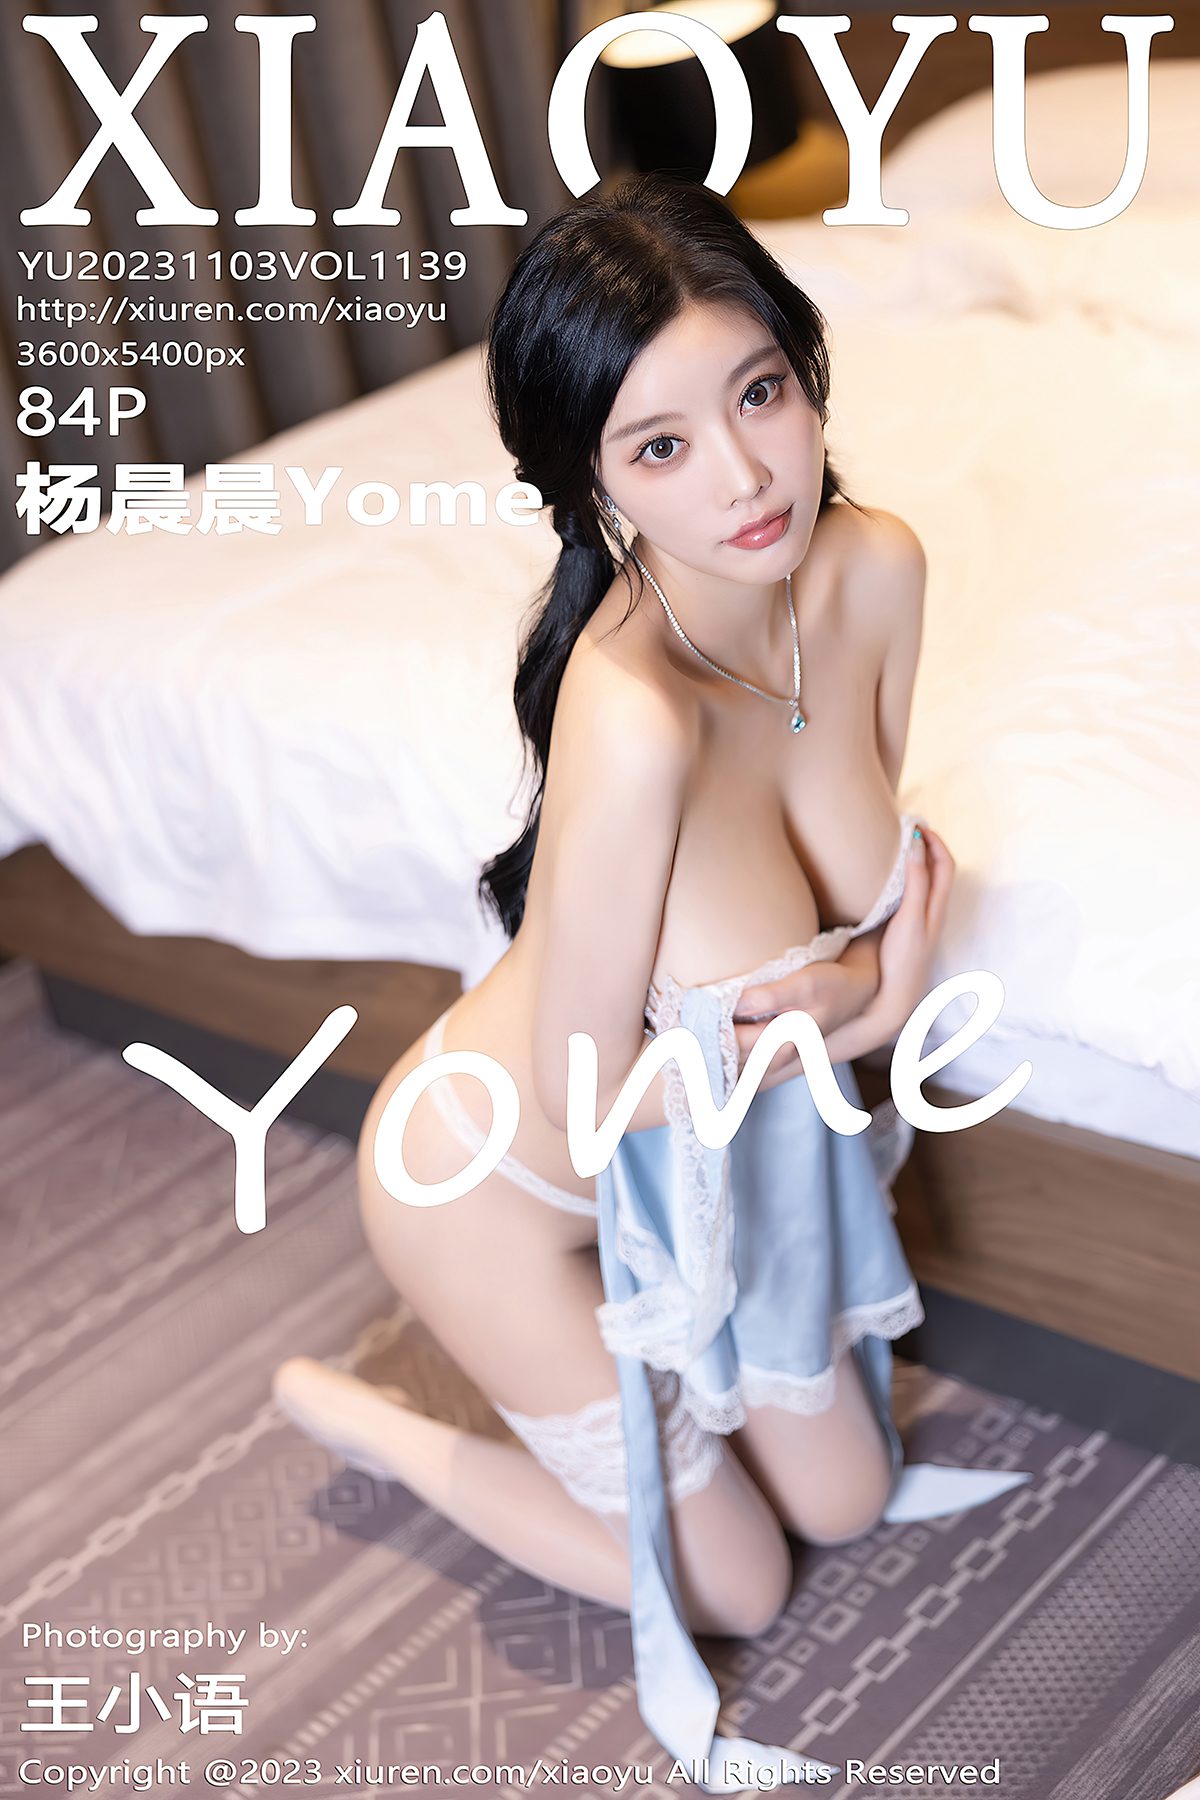 XiaoYu Vol.1139 Yang Chen Chen Yome